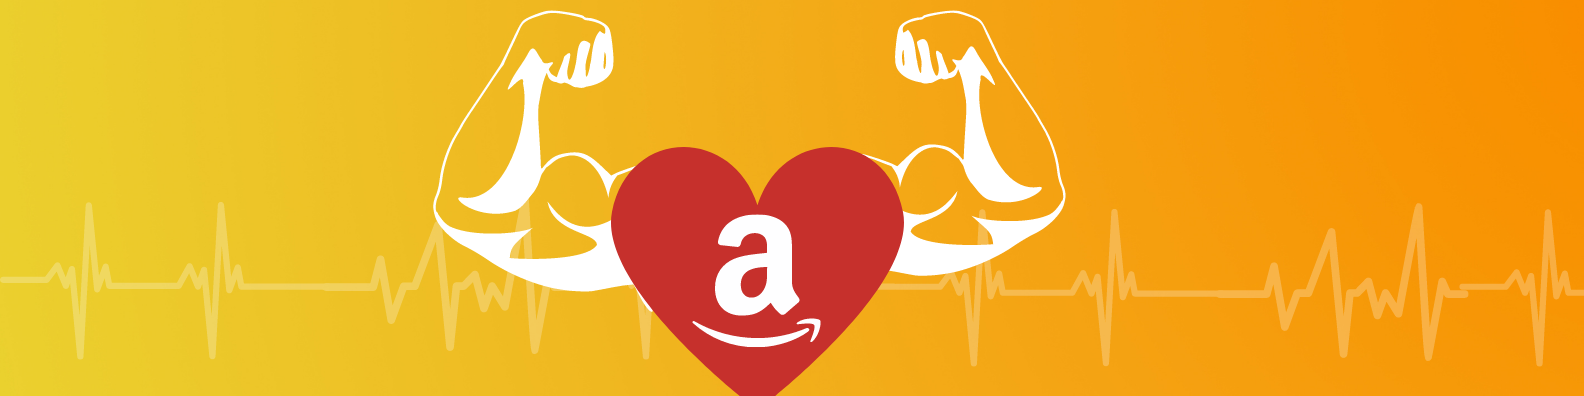 Keeping Amazon Accounts Healthy